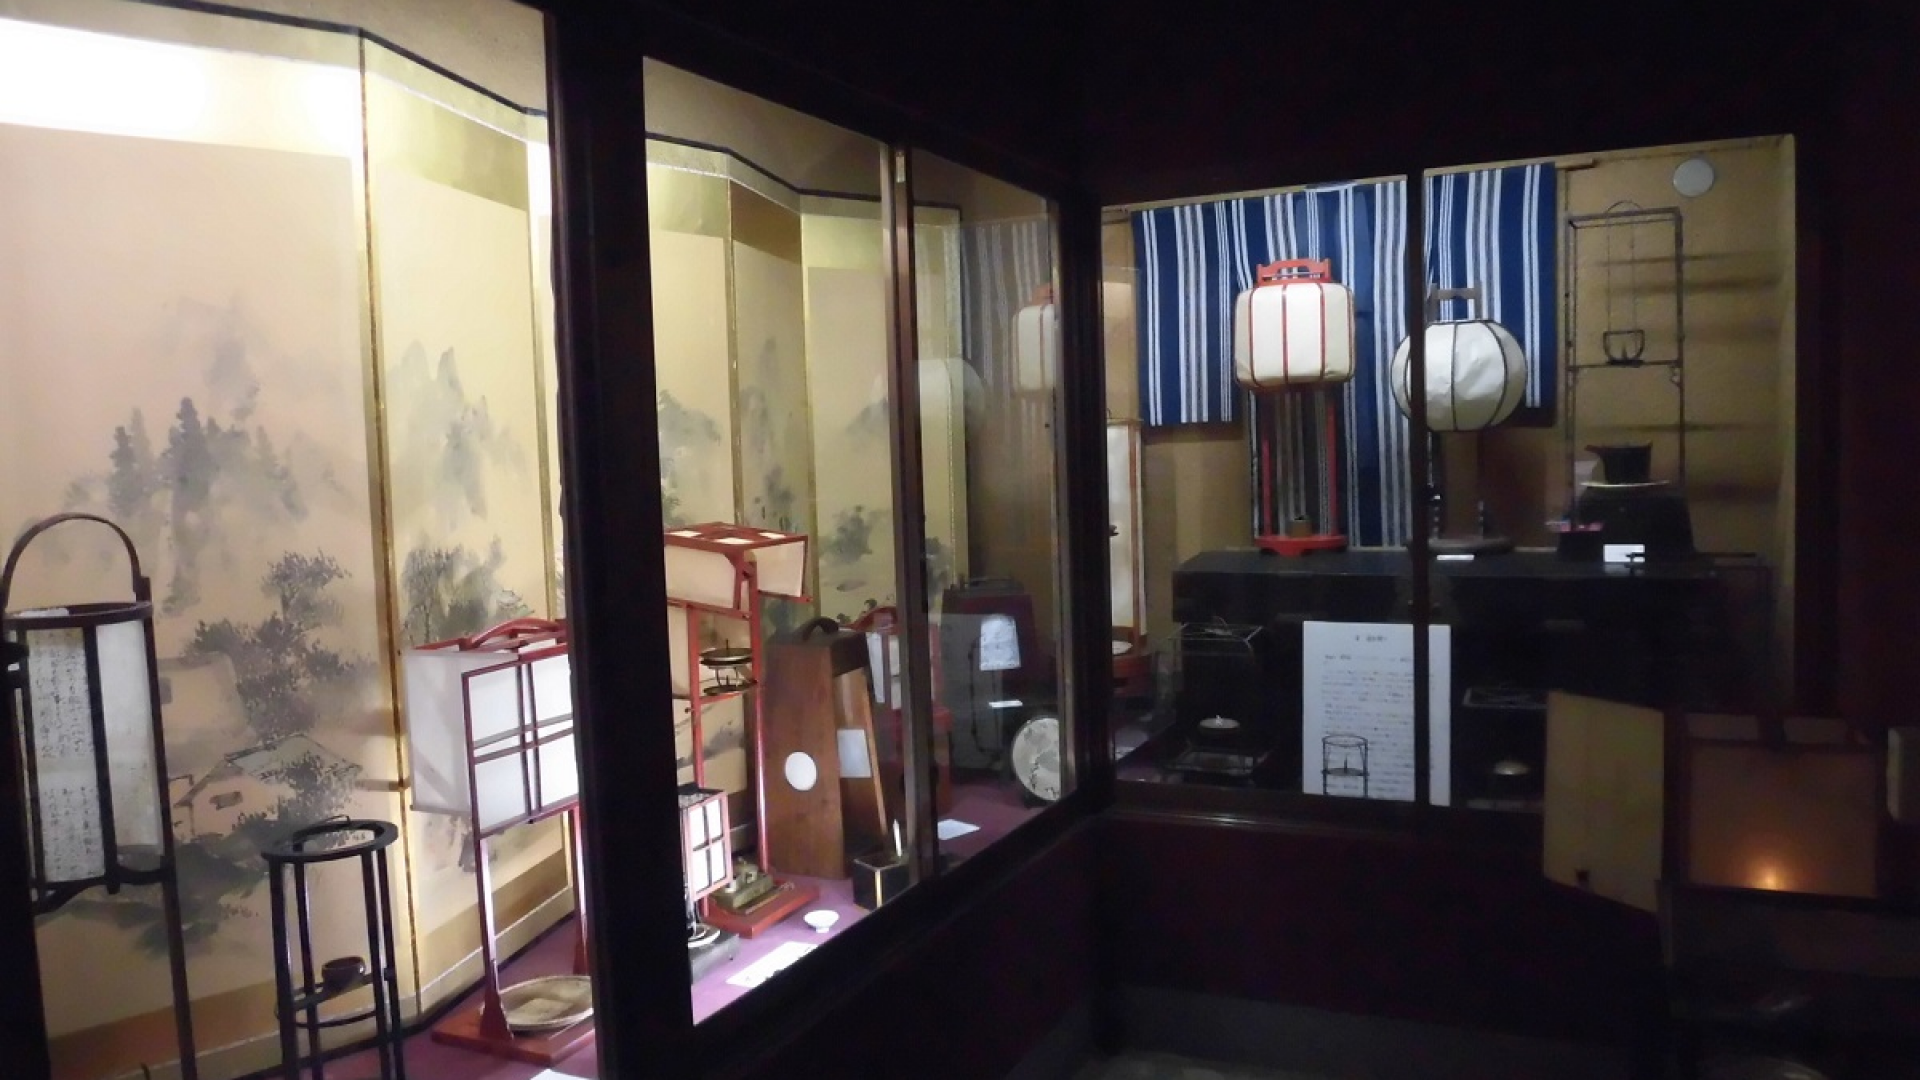 Expériences amusantes au Musée des Arts Folkloriques japonais "Edo Mingu Kaido"